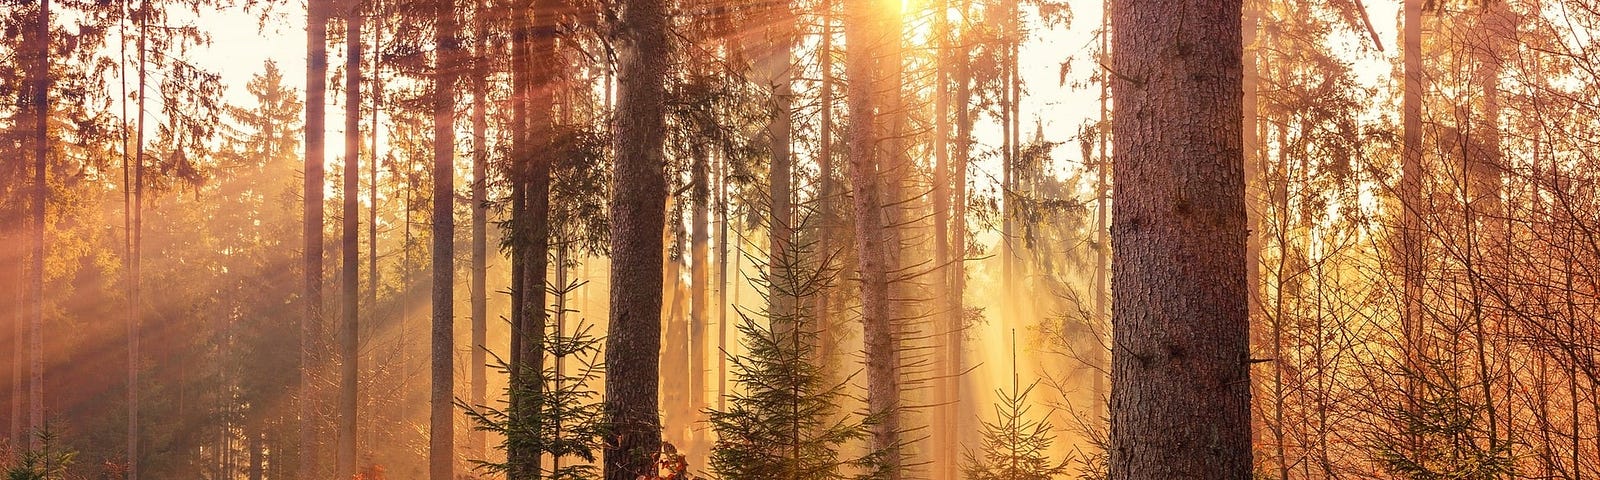 Image de couverture : forêt avec arbres droits et soleil couchant